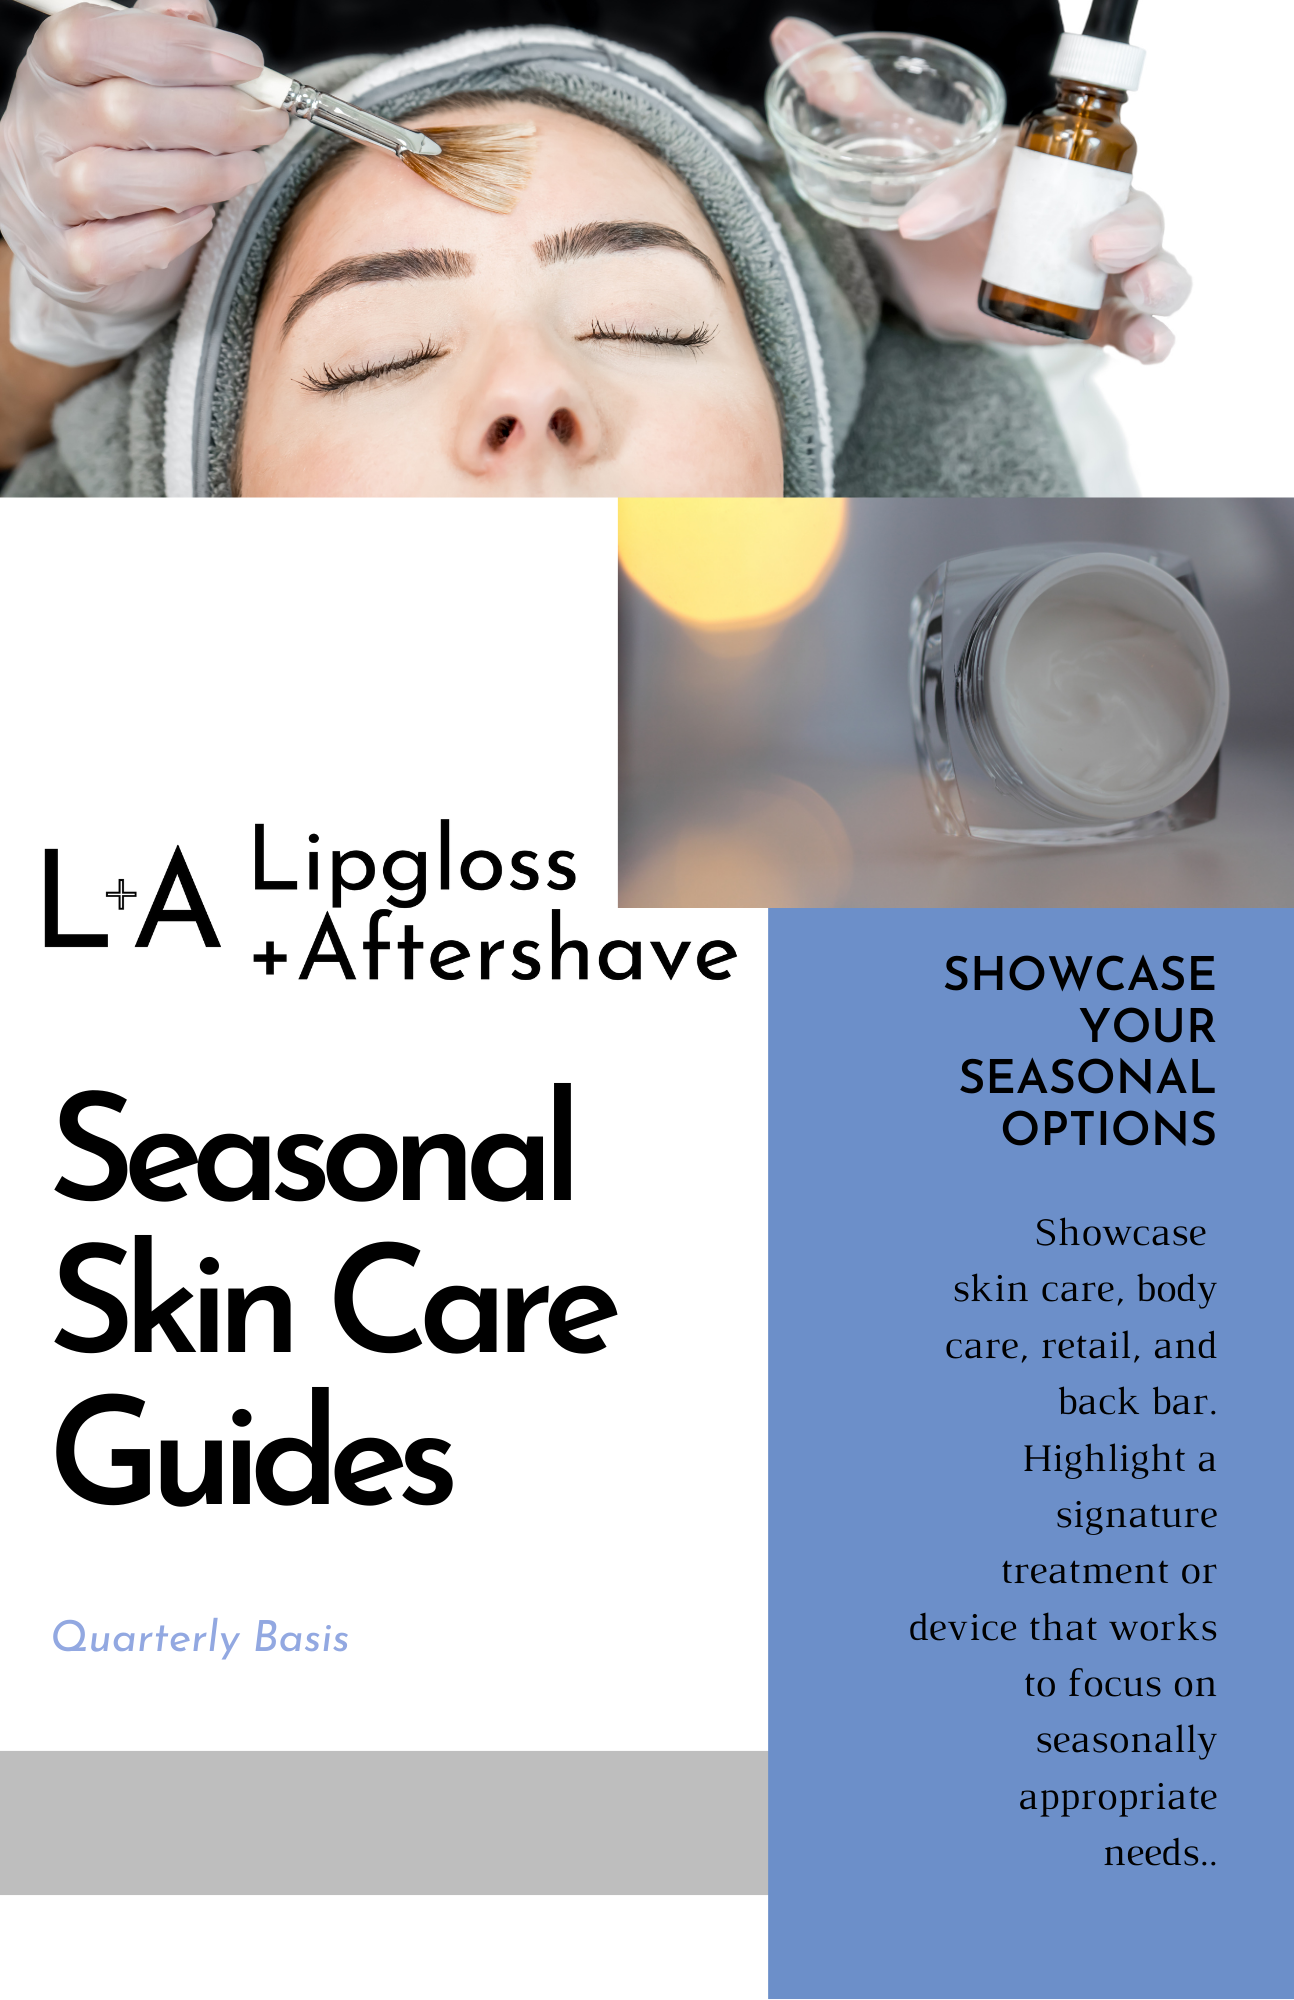 Seasonal Skin Care Guide